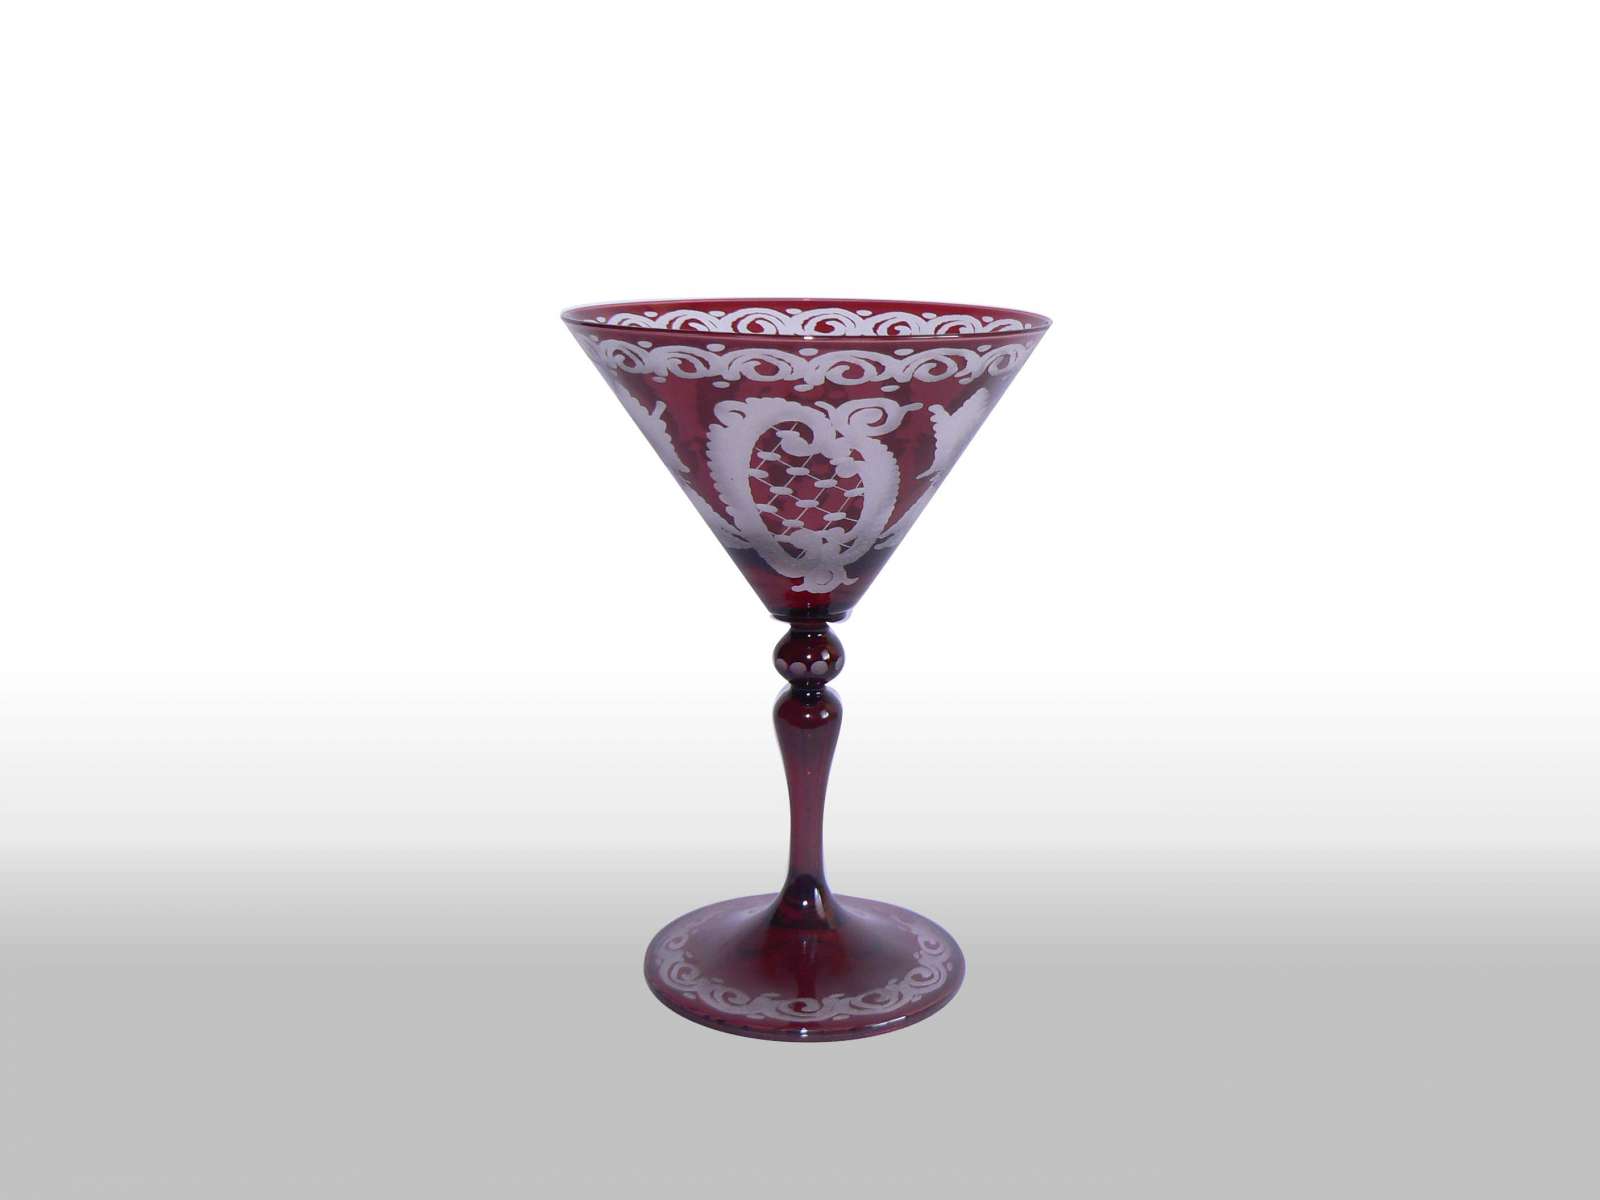 Sklenice martini | Kód zboží: martini/210ml/28011 | Cena za 1 kus: 0,- Kč